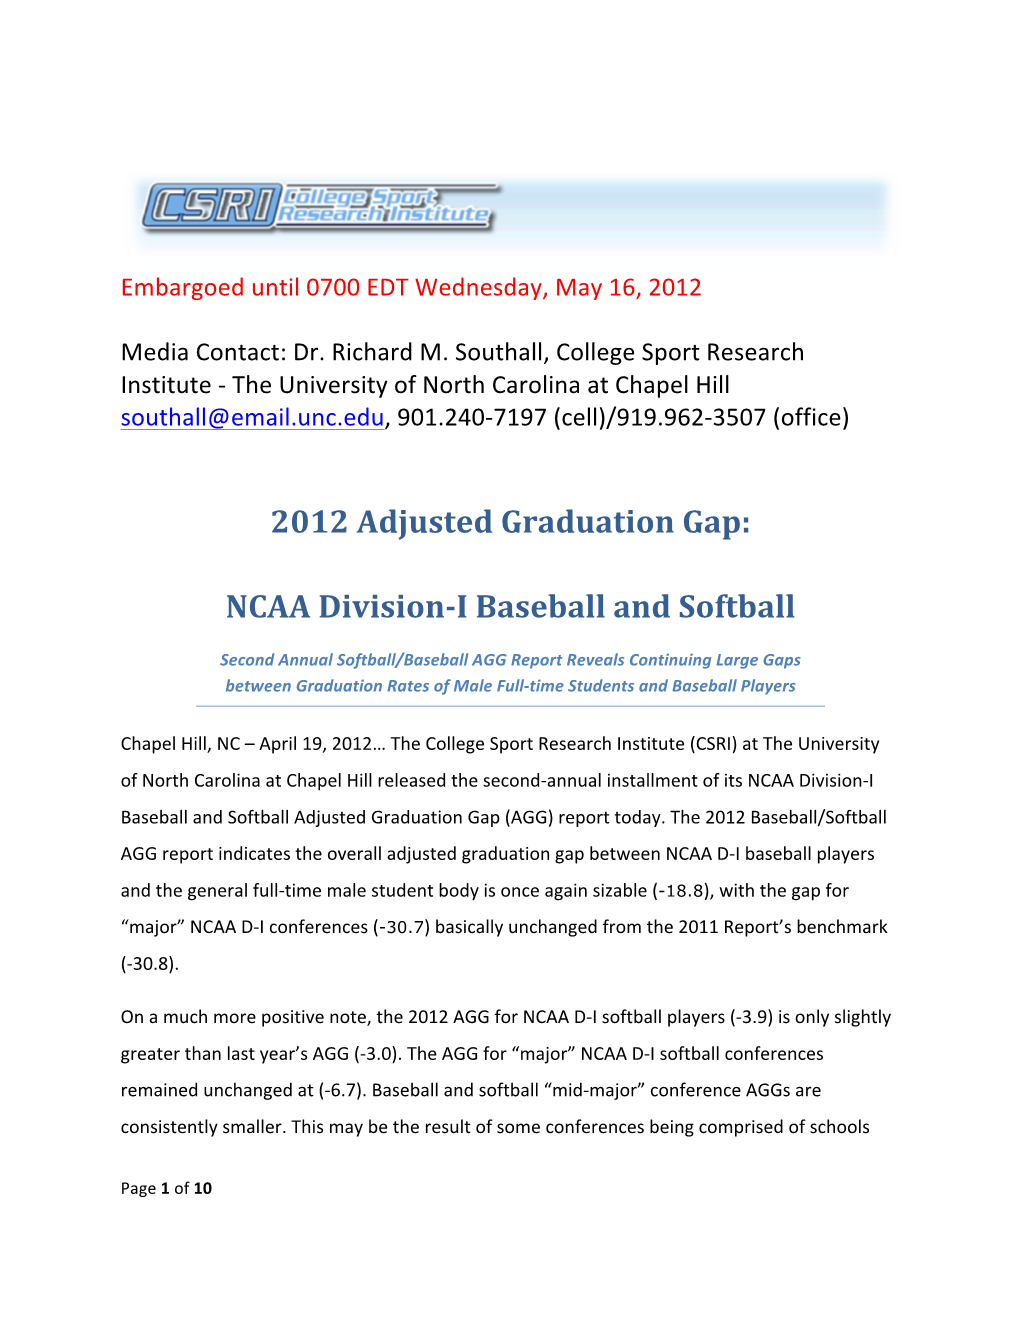 2012 Adjusted Graduation Gap: NCAA Division-‐I Baseball and Softball